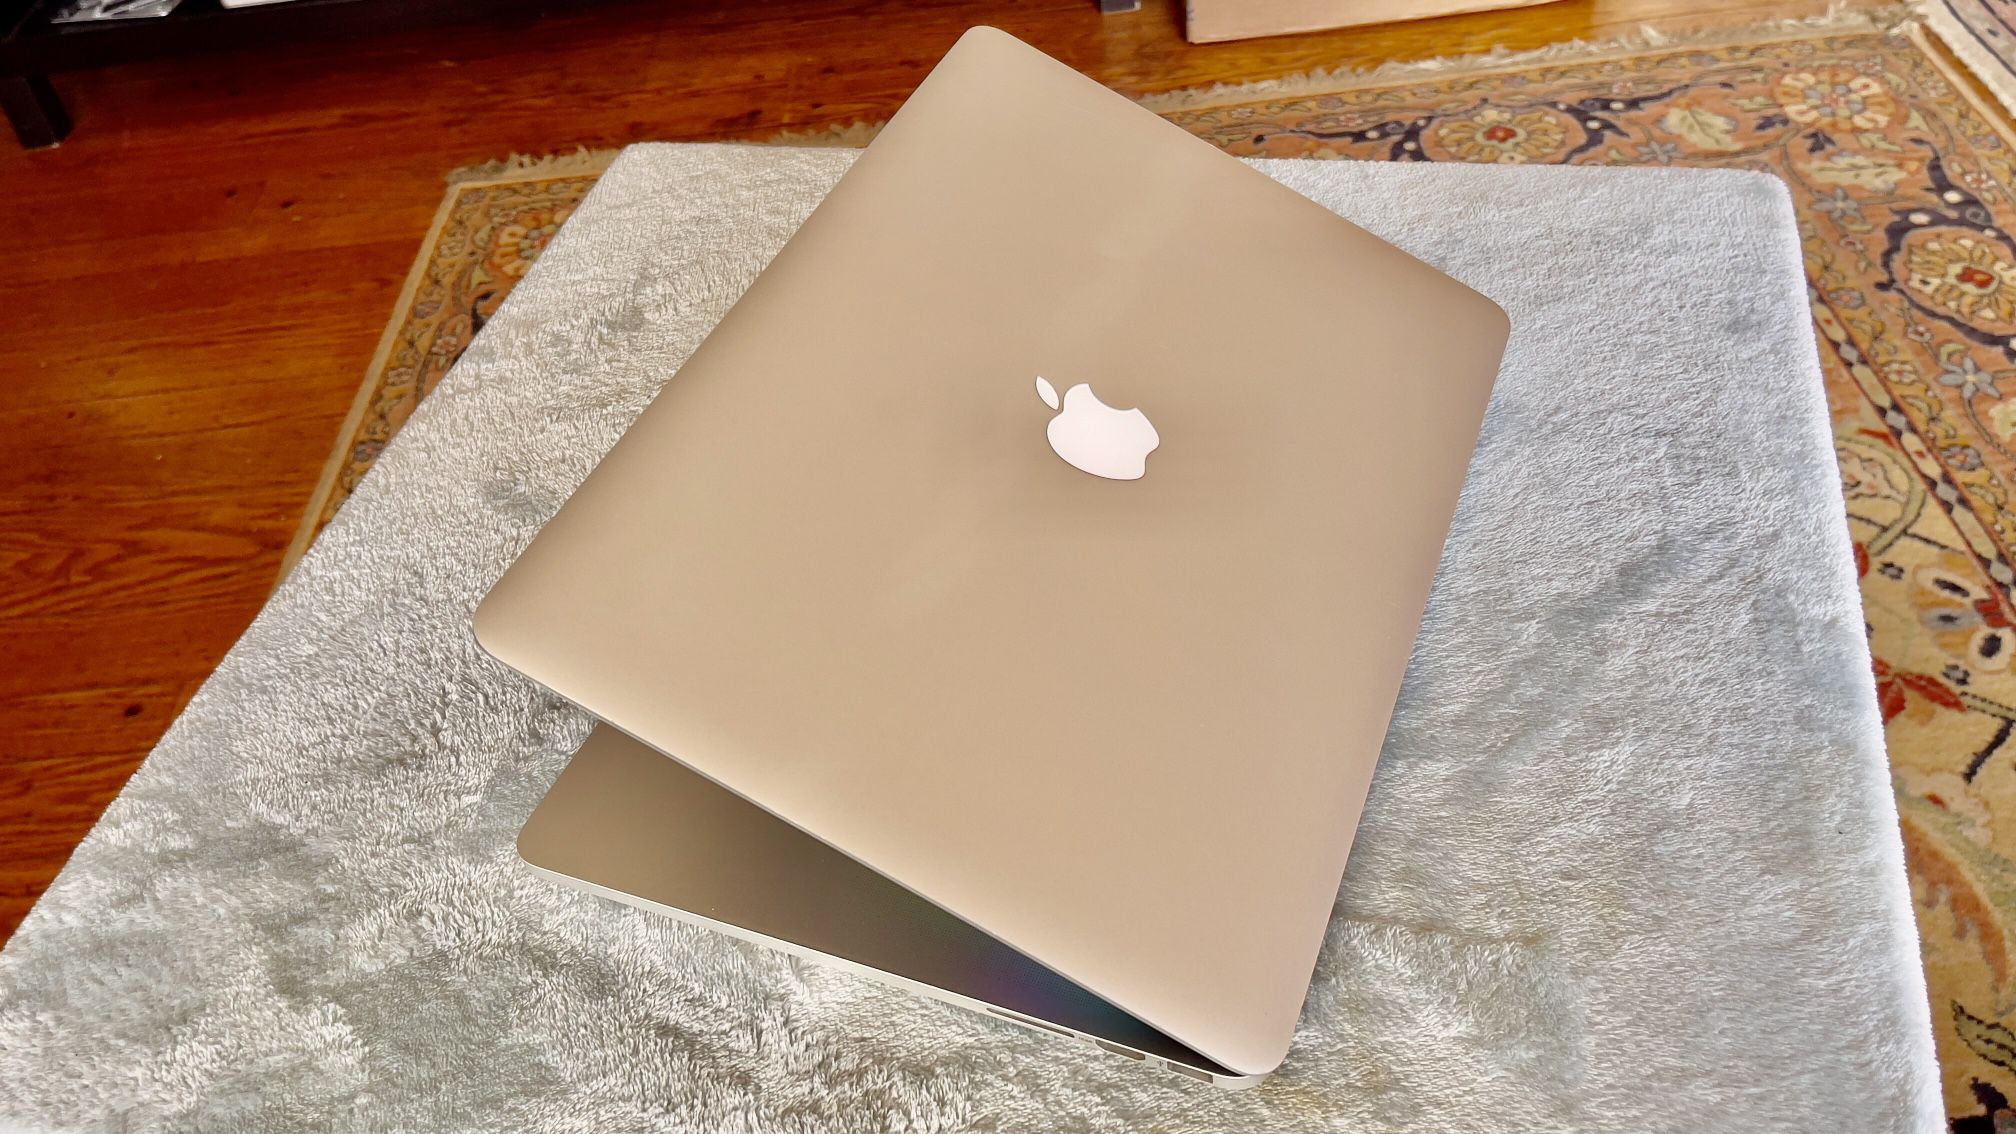 Apple MacBook Pro. Retina 15” Quad Core I7 16Gb Ram 1TB Ssd $375